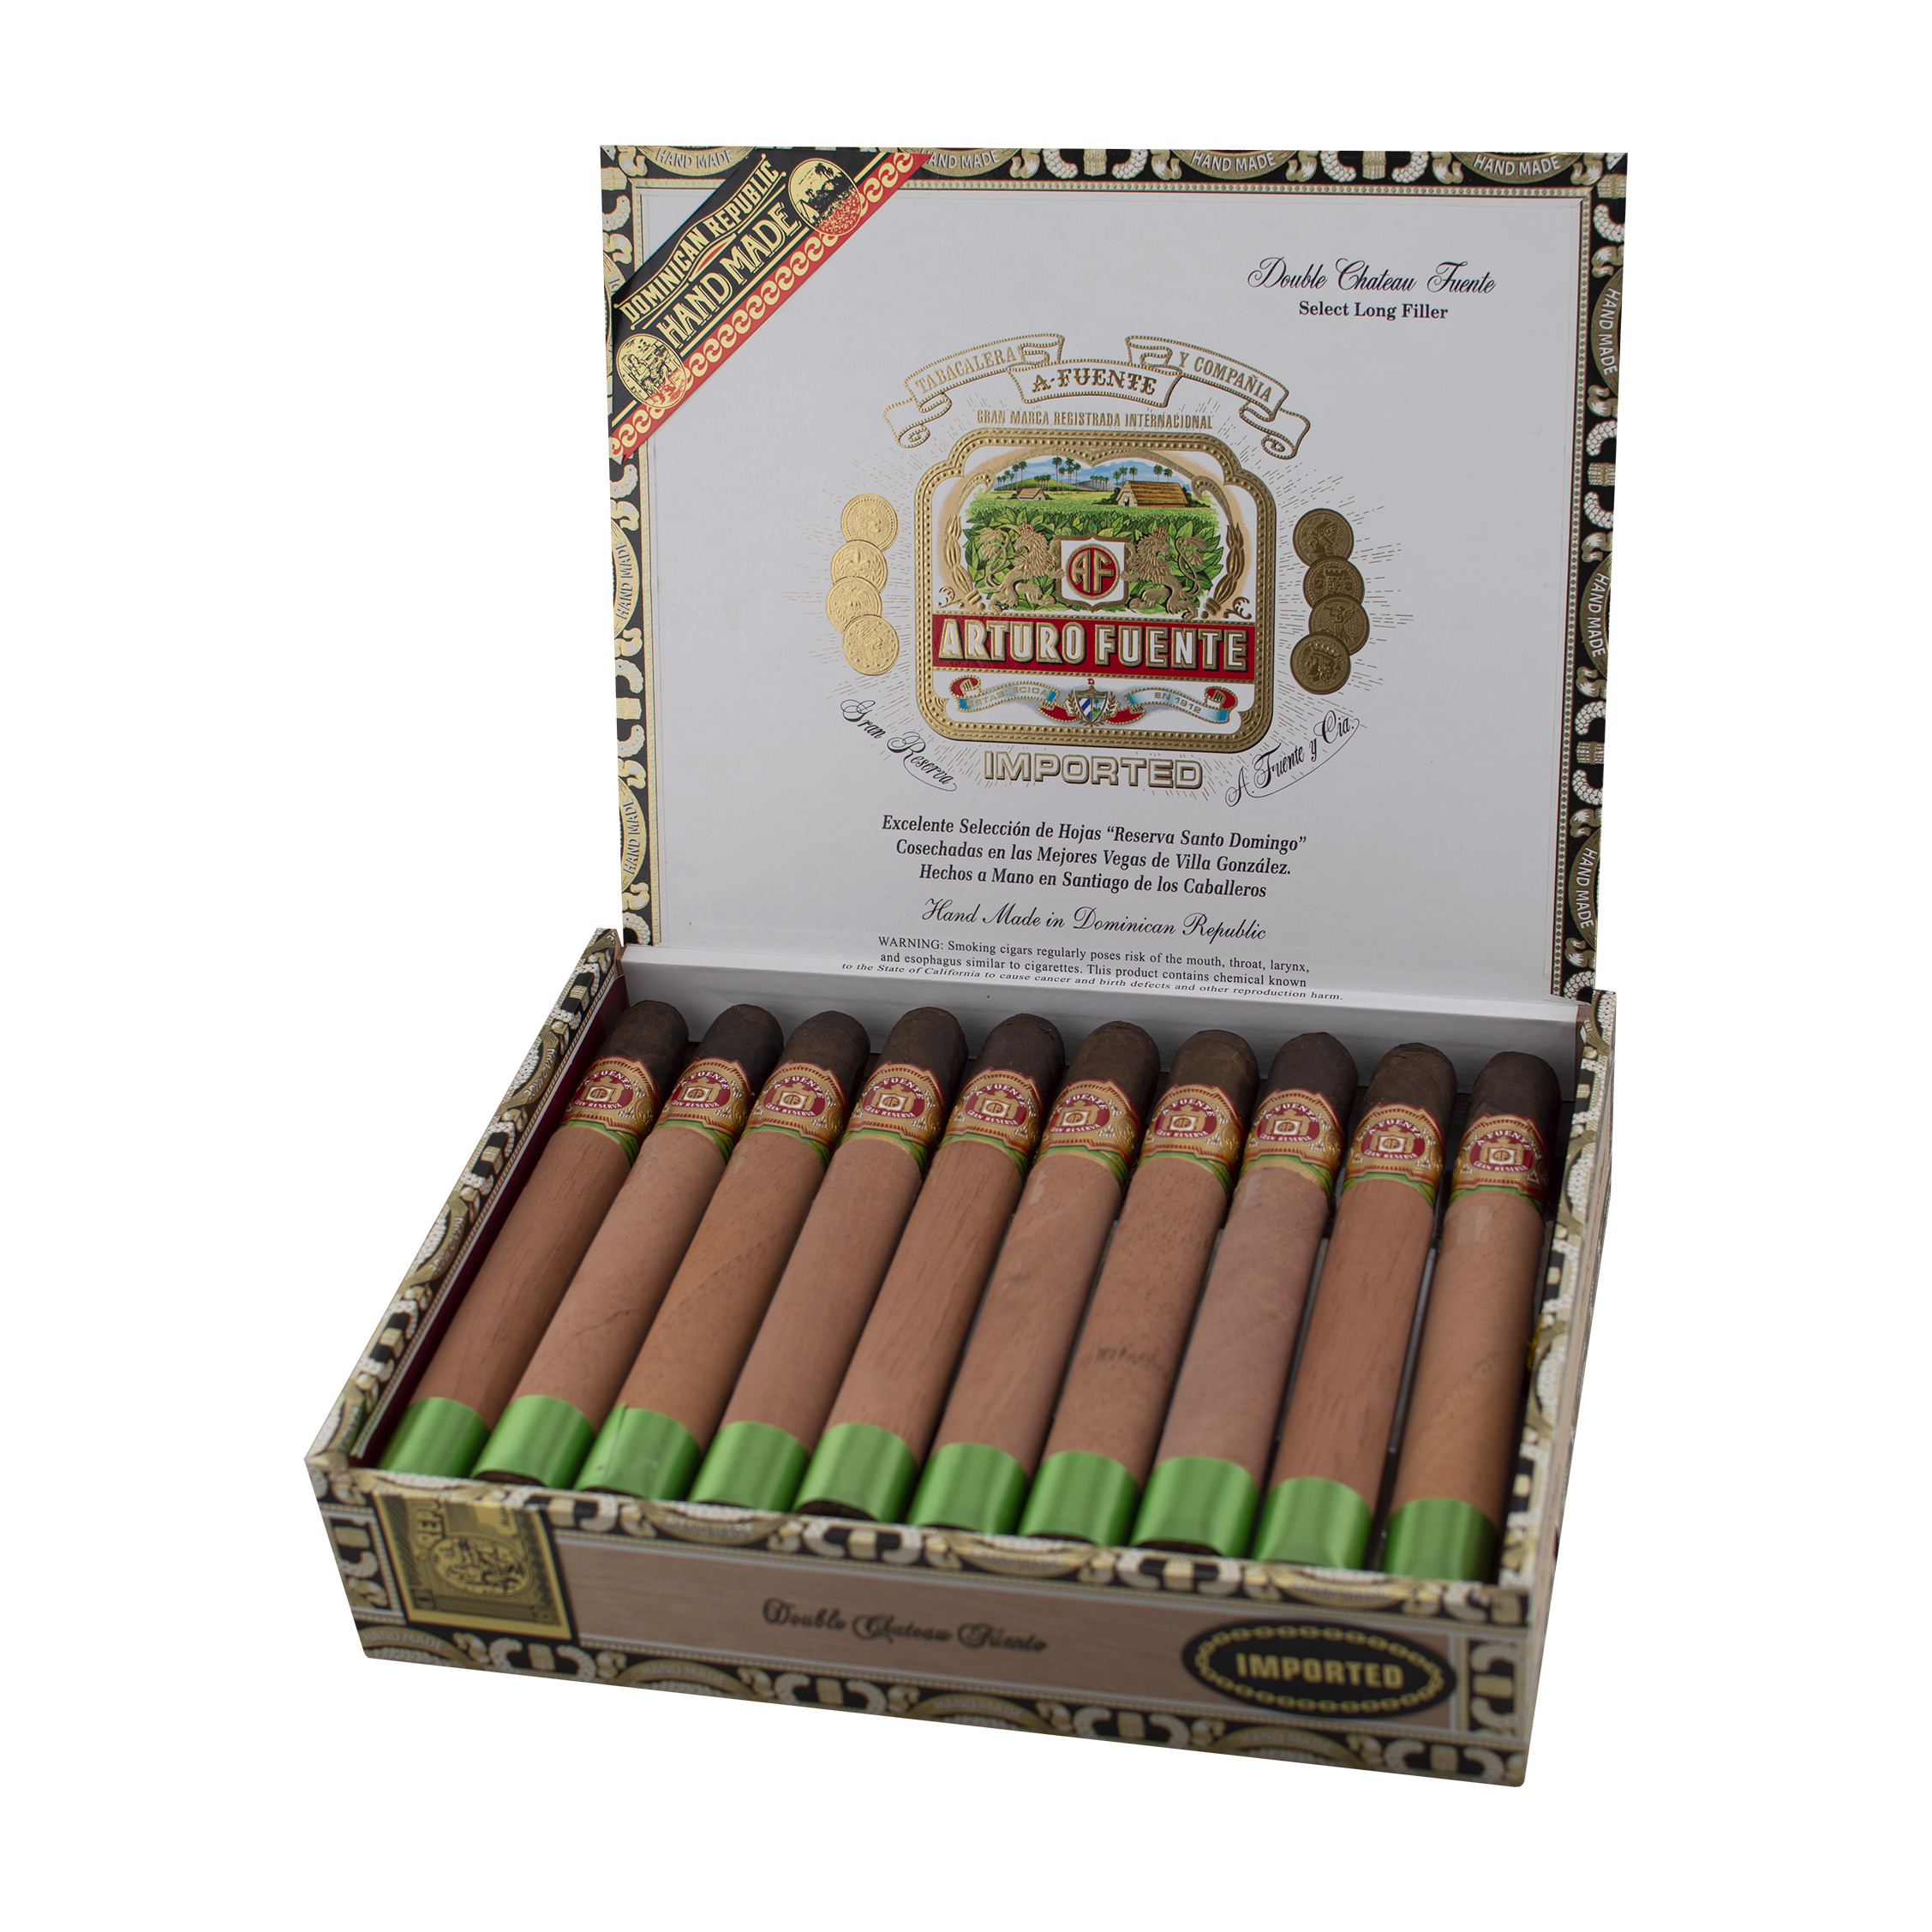 Arturo Fuente Double Chateau Maduro Cigar - Box